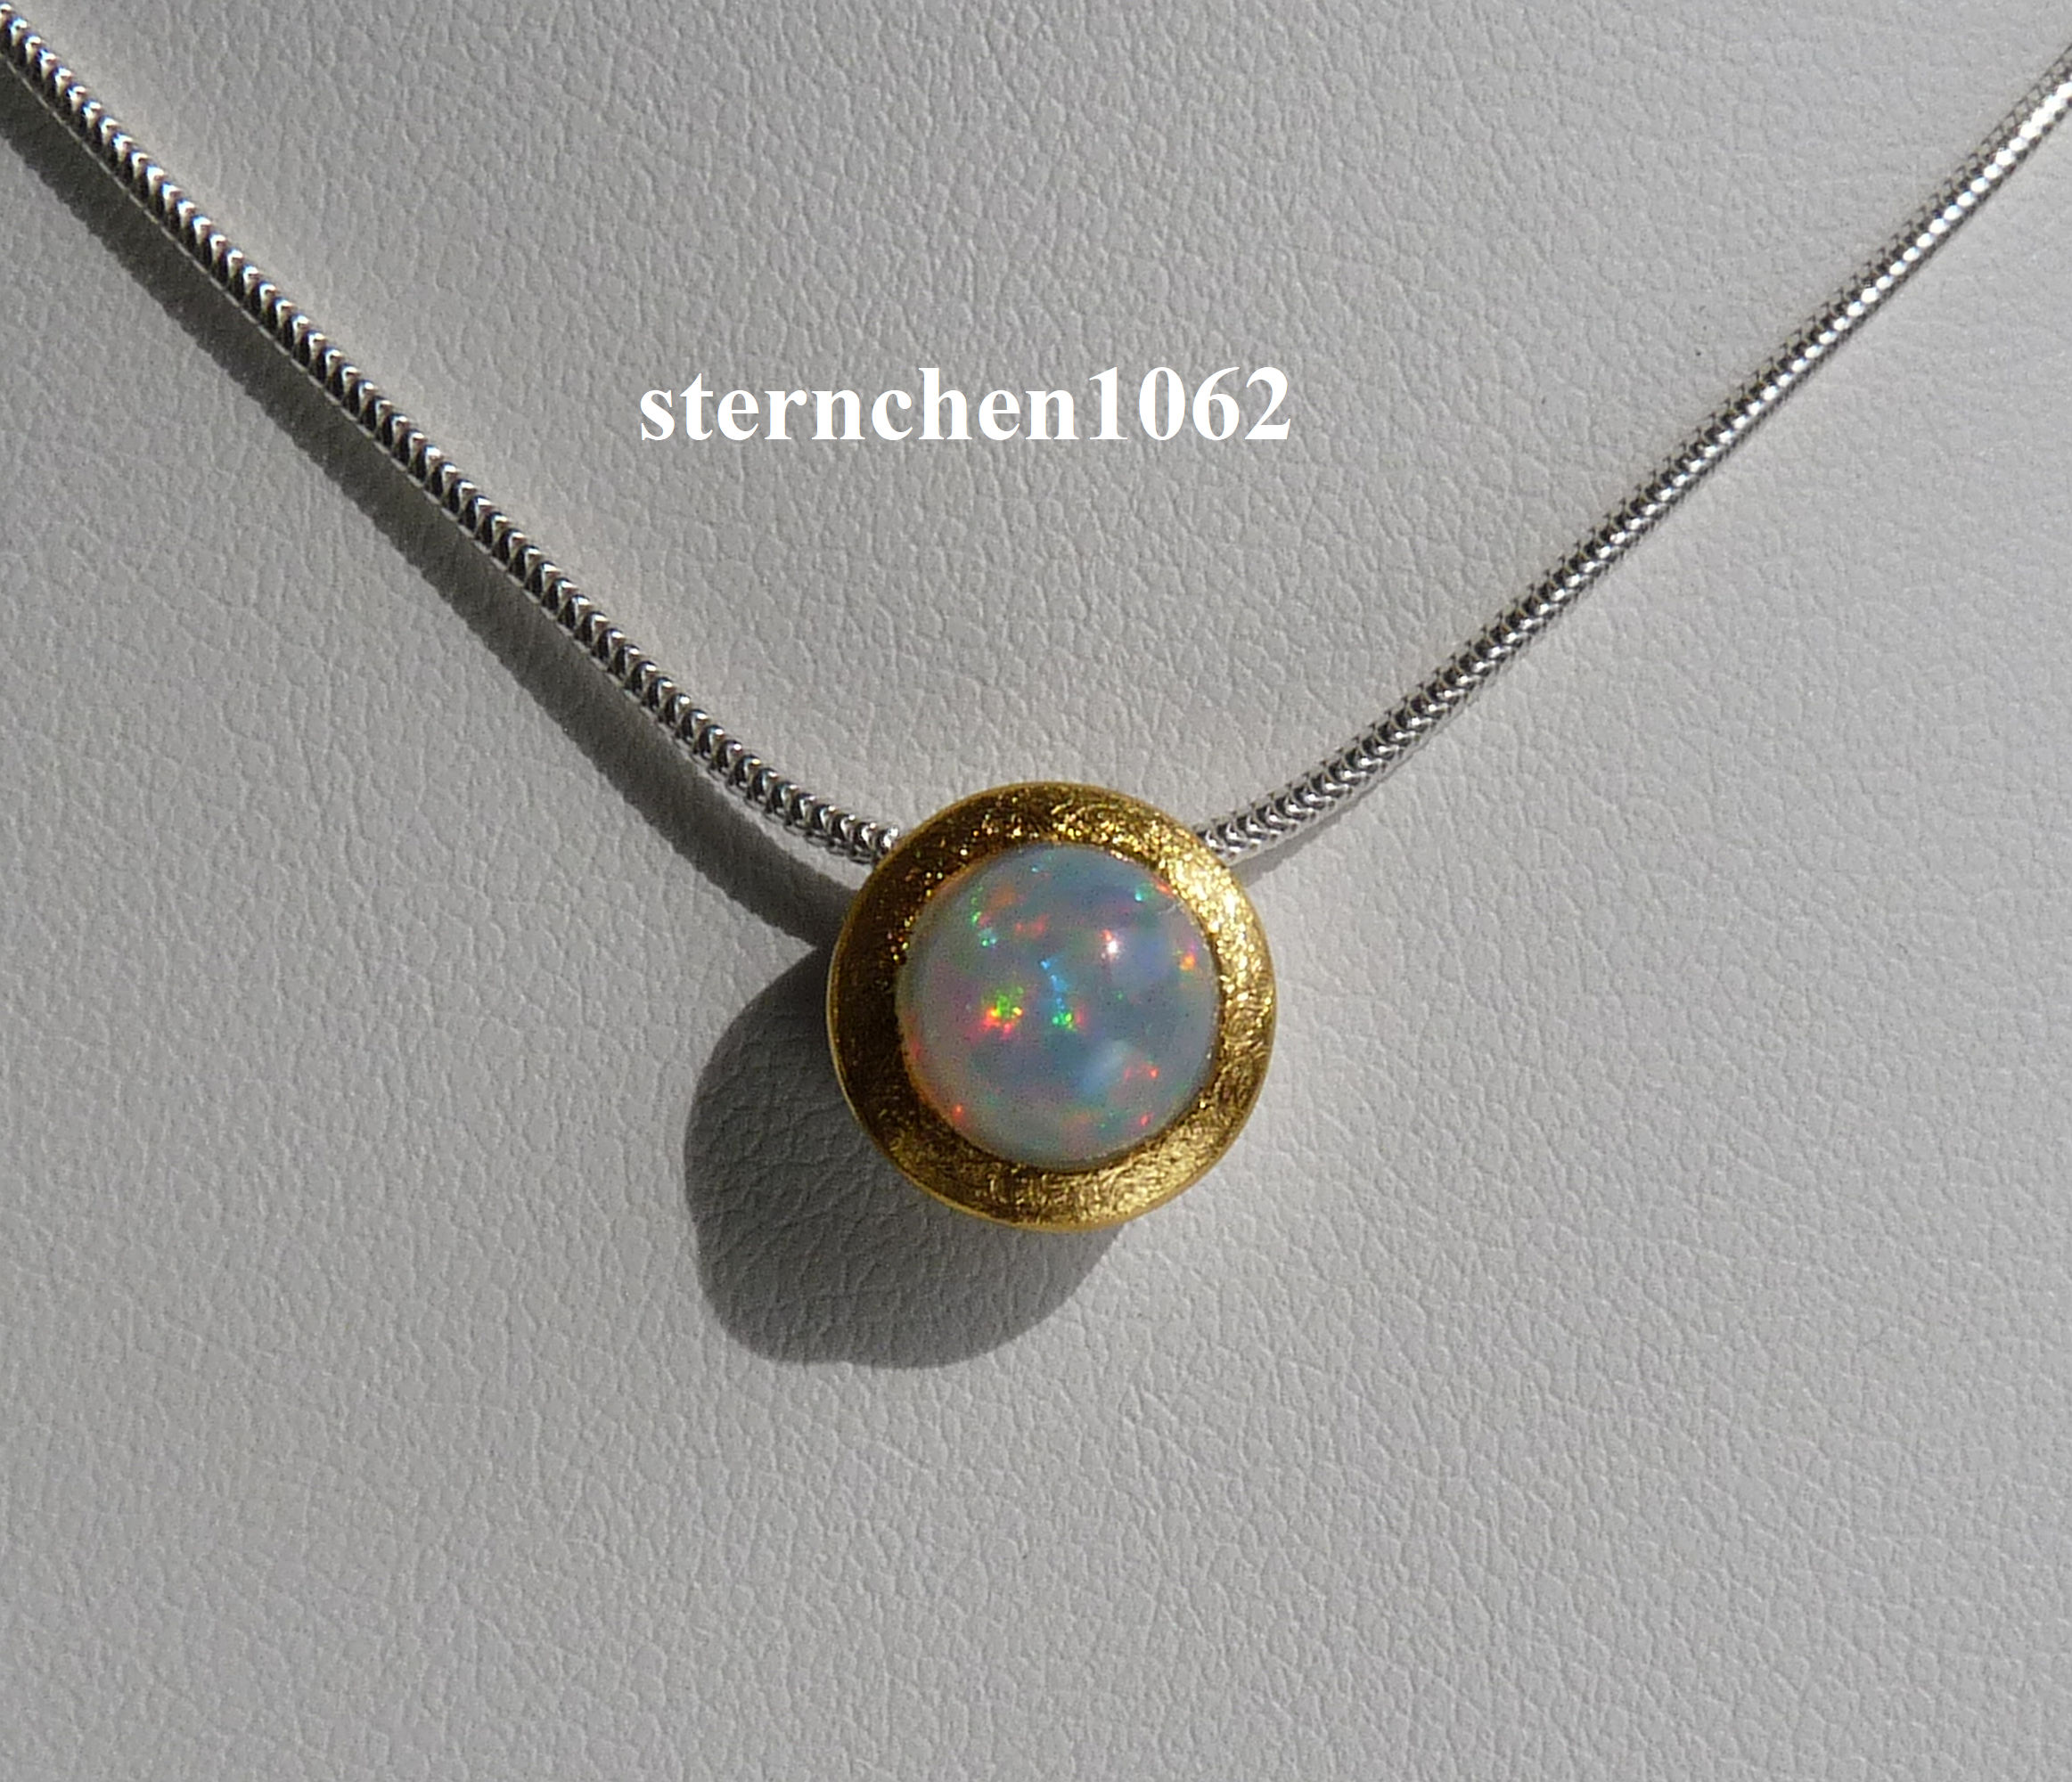 Sternchen 1062 - Einzelstück * Halskette mit Opal Anhänger * 925 Silber *  24 ct Gold